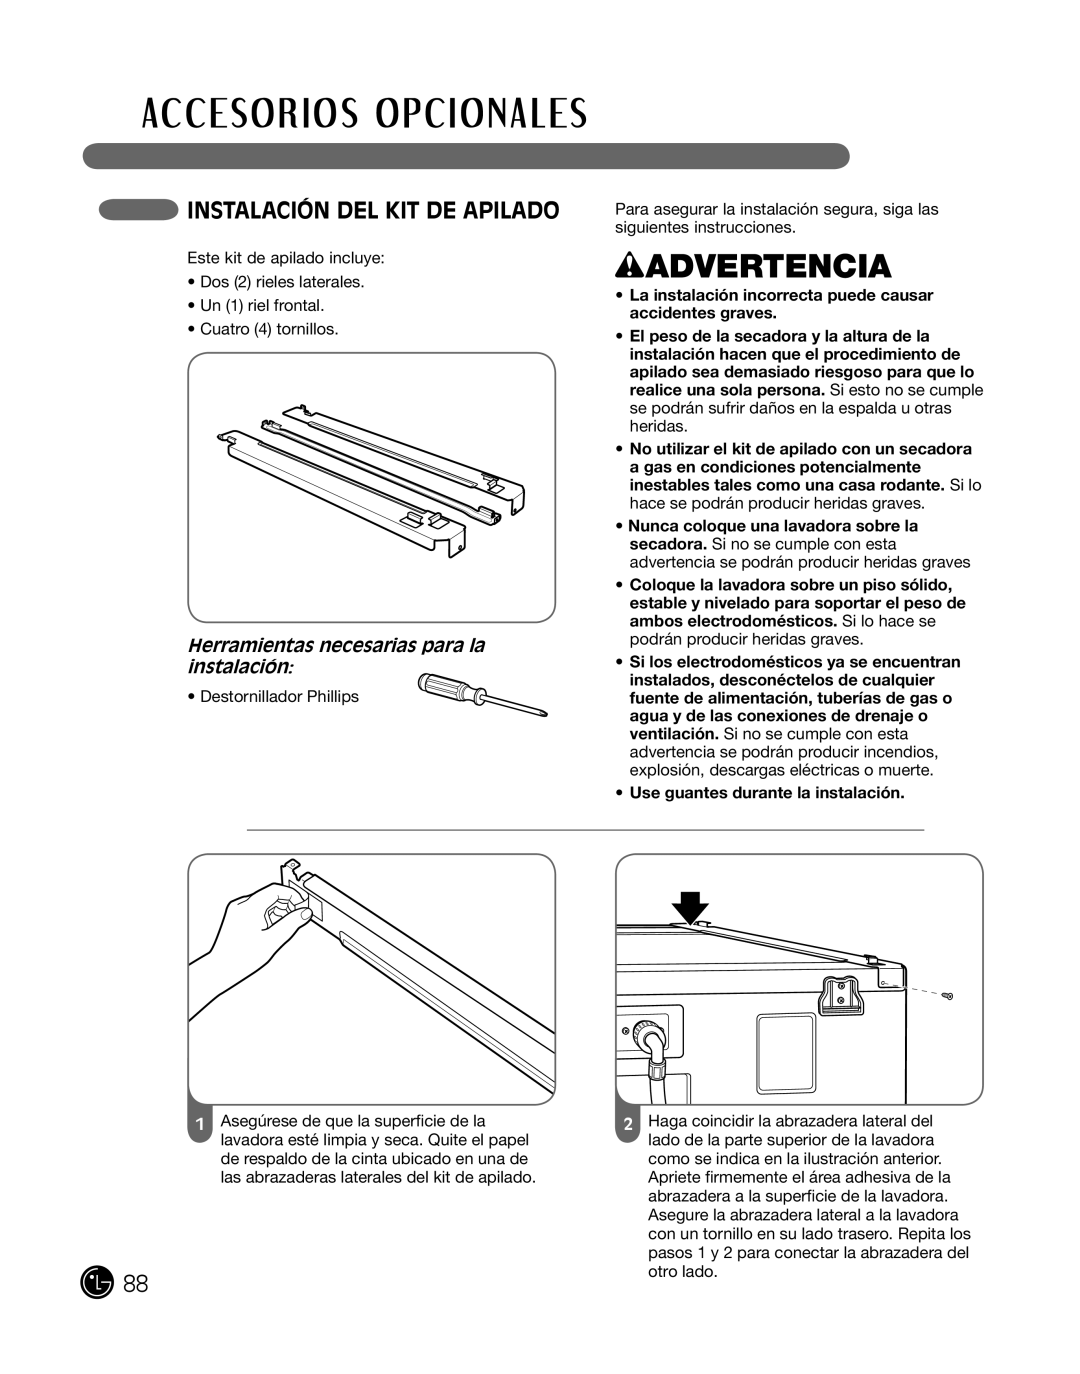 LG Electronics P154 manual inSTalaciÓn del KiT de aPilado, wADVERTENCIA, Herramientas necesarias para la instalación 